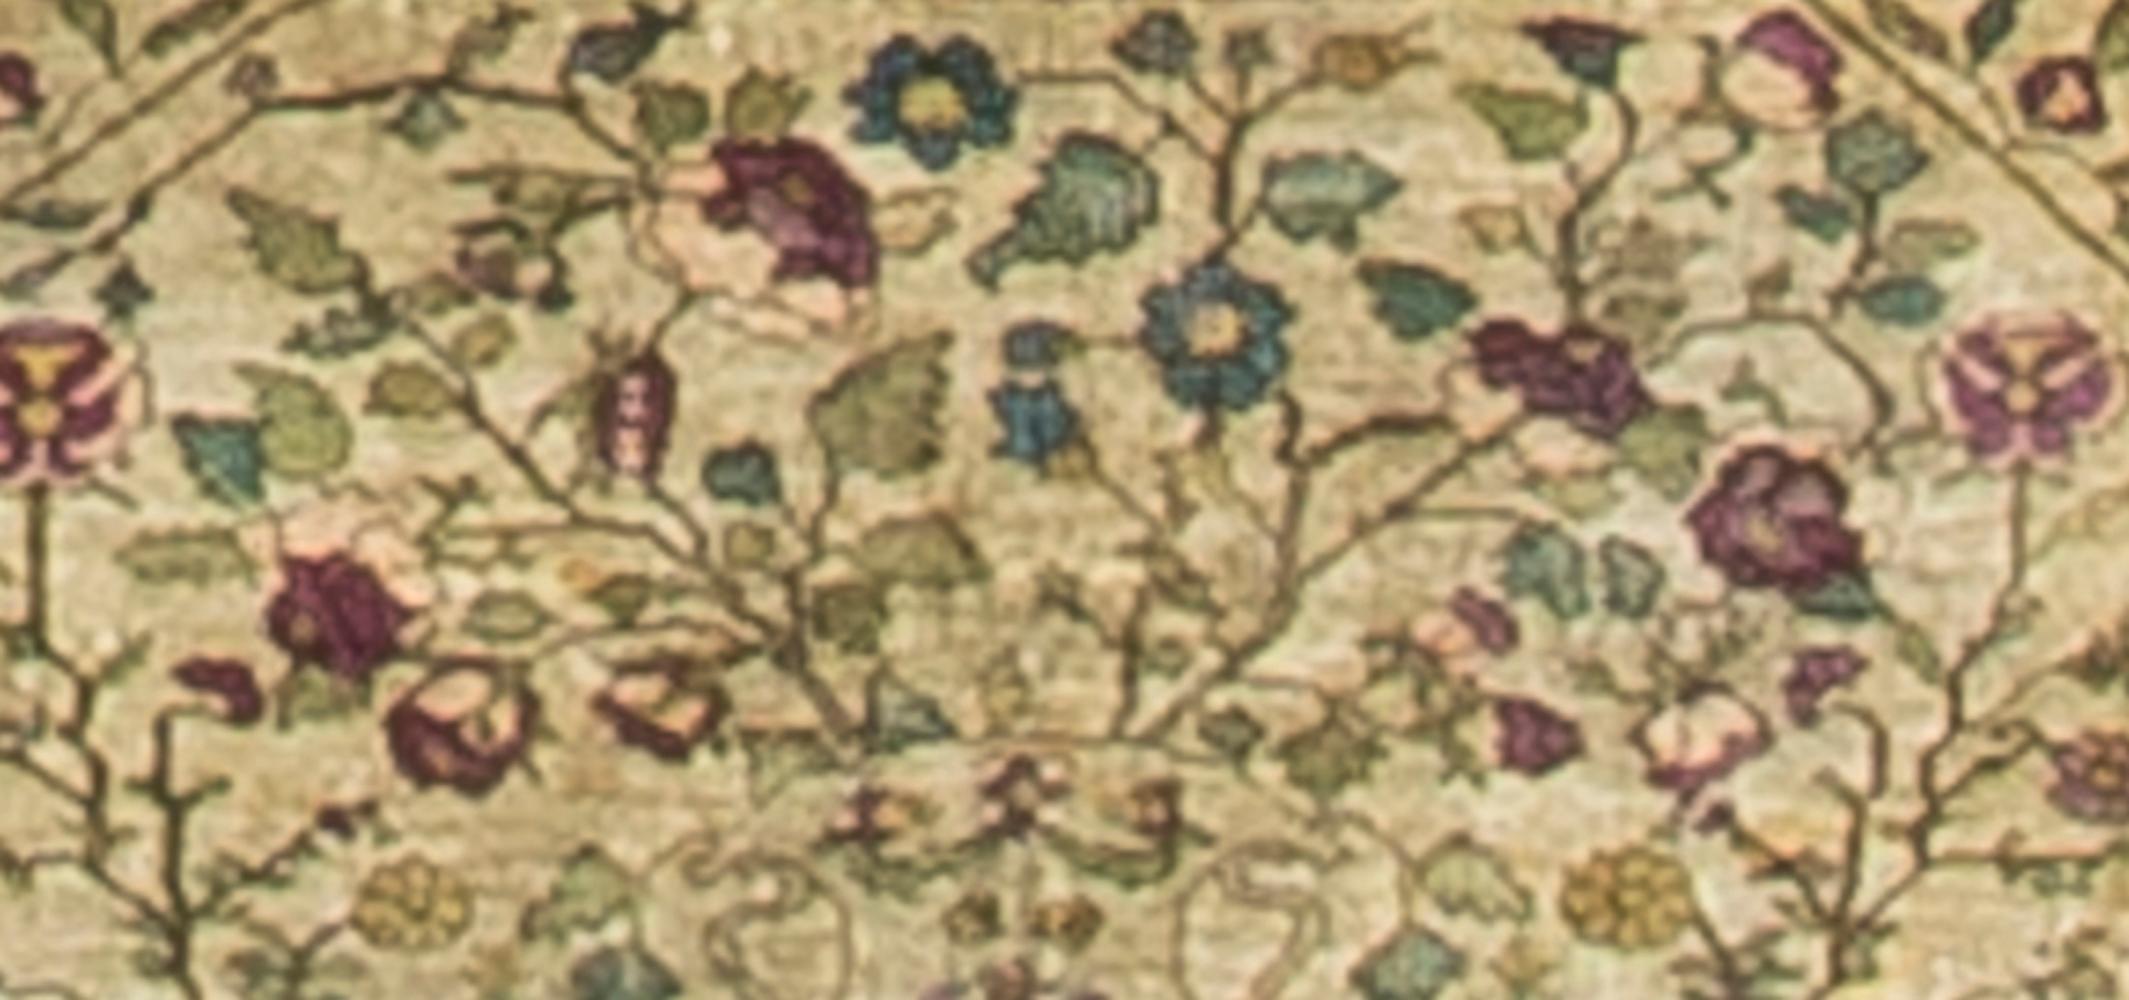 Antiker persischer Seiden-Kaschan-Teppich, um 1900. Ein schöner, sehr fein gewebter Teppich mit einem floral gefüllten zentralen Feld, in dem die Stängel und Blumen in komplizierten Details dargestellt sind. Größe: 1'8 x 2'5.
 